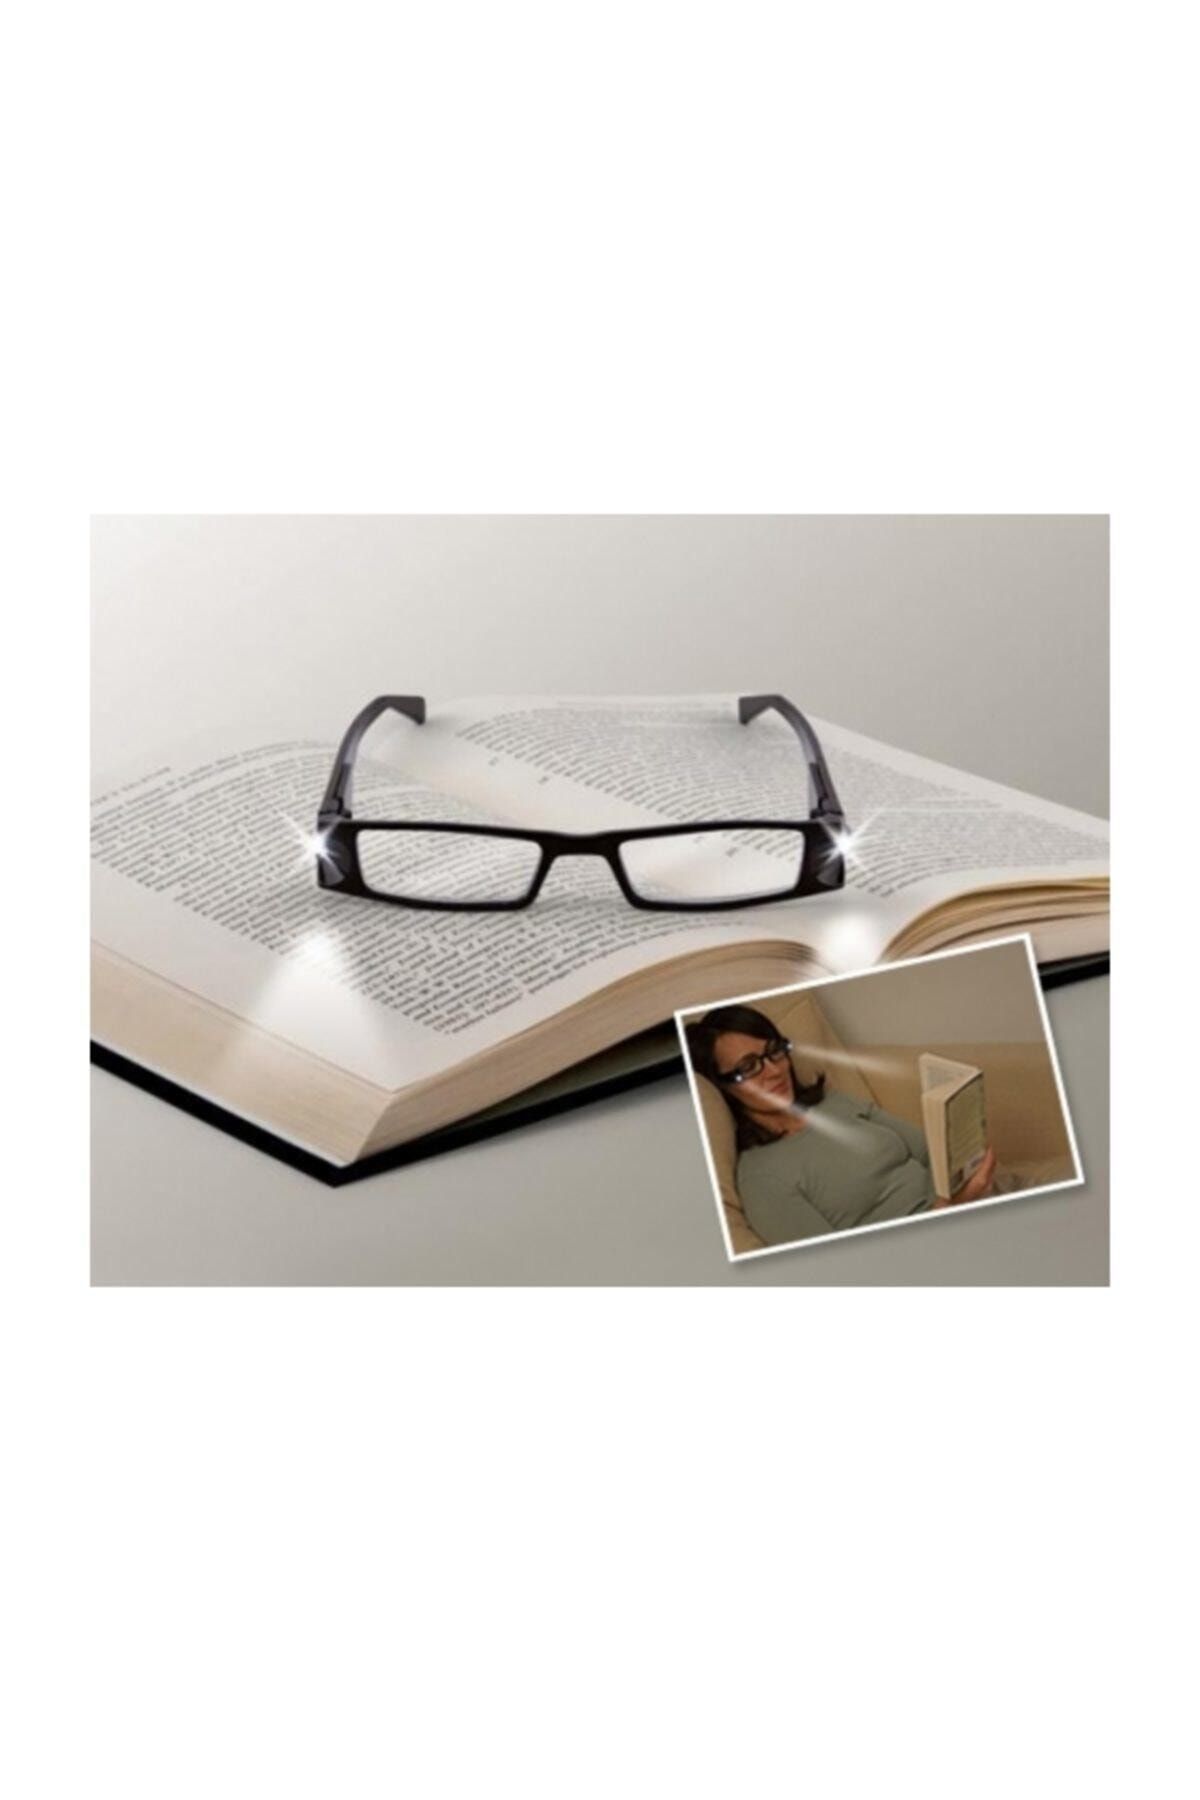 Pi İthalat Kitap Okuma Gözlüğü Led Işıklı